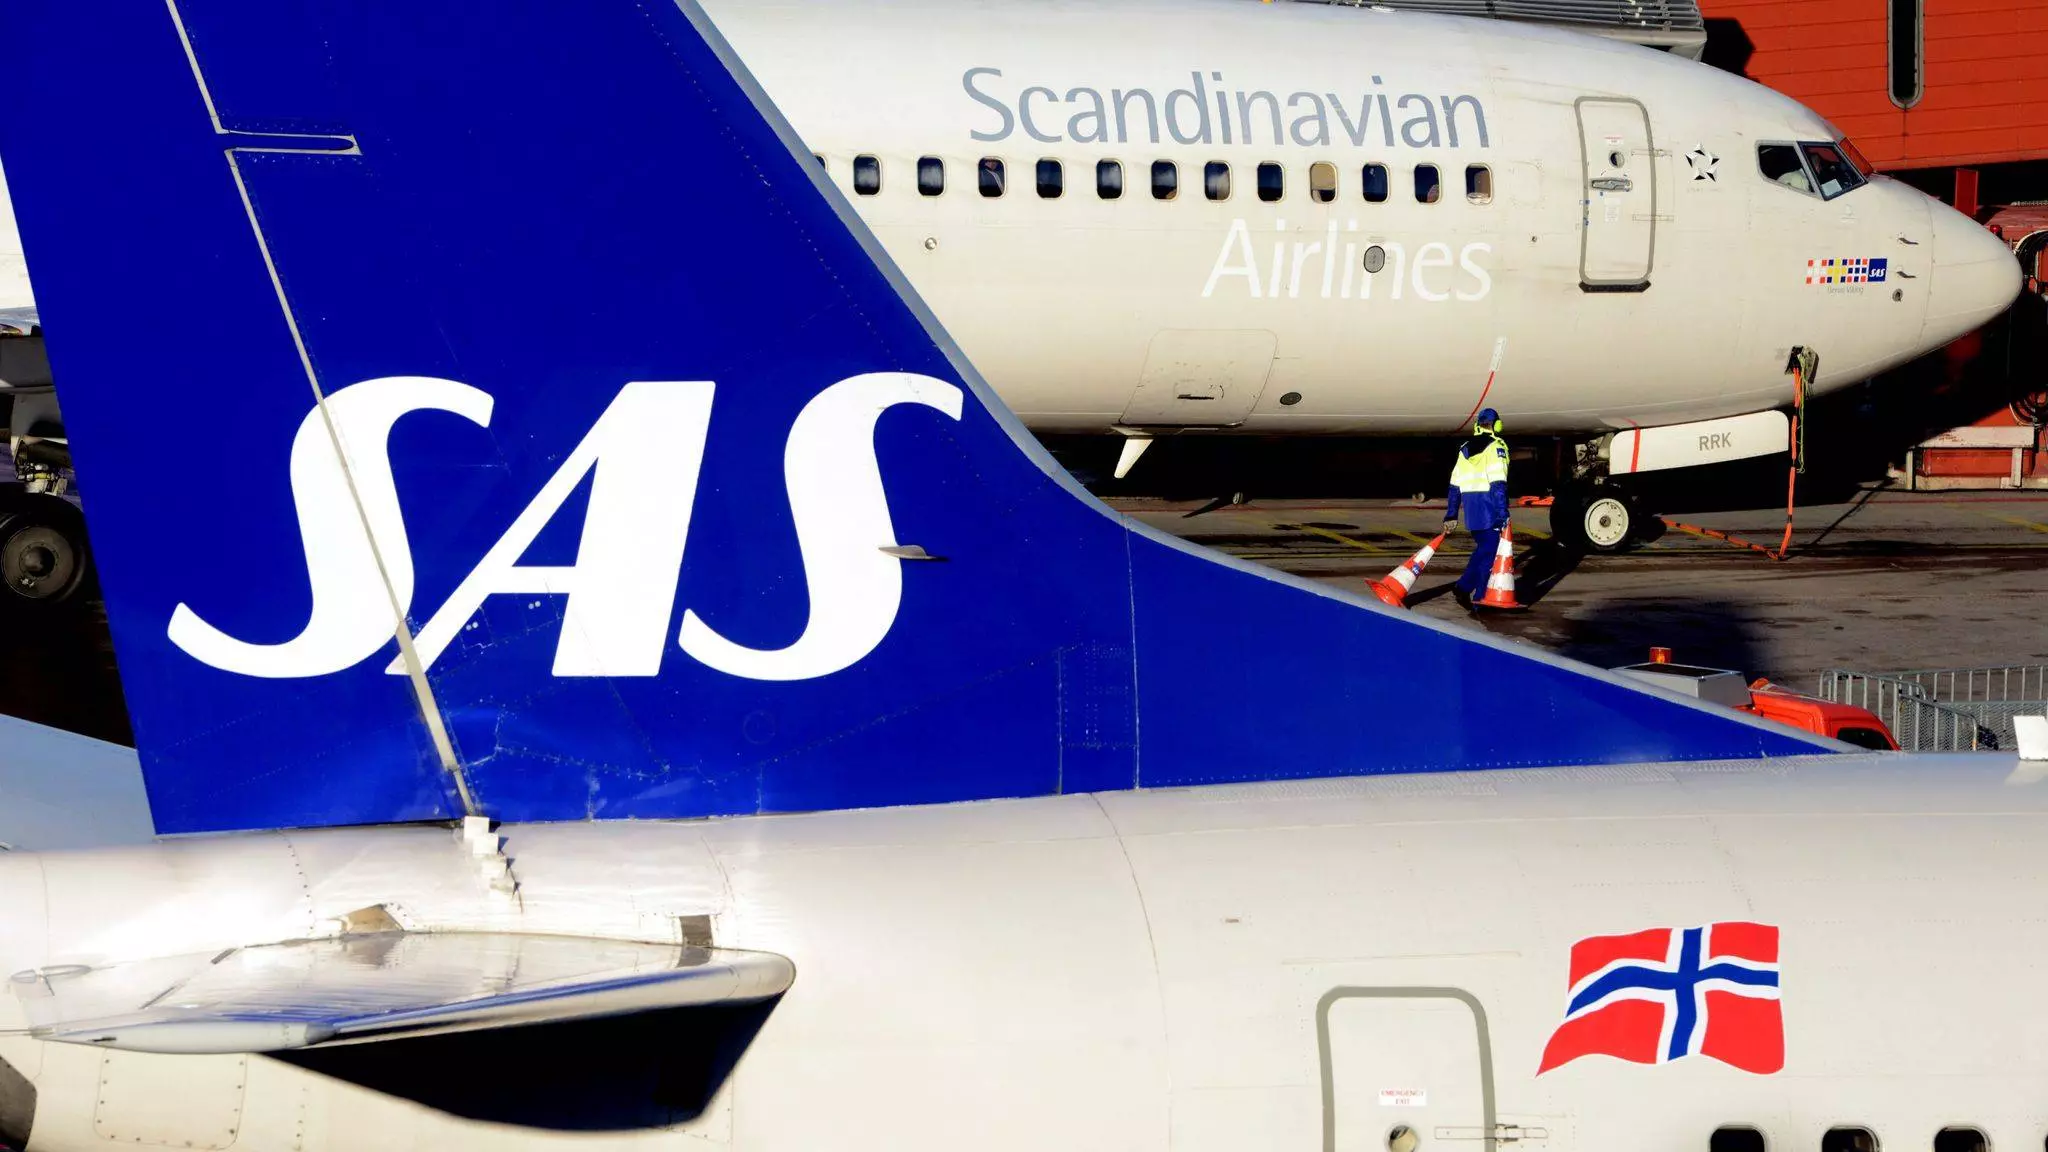 Мультинациональная авиакомпания sas (scandinavian airlines system)